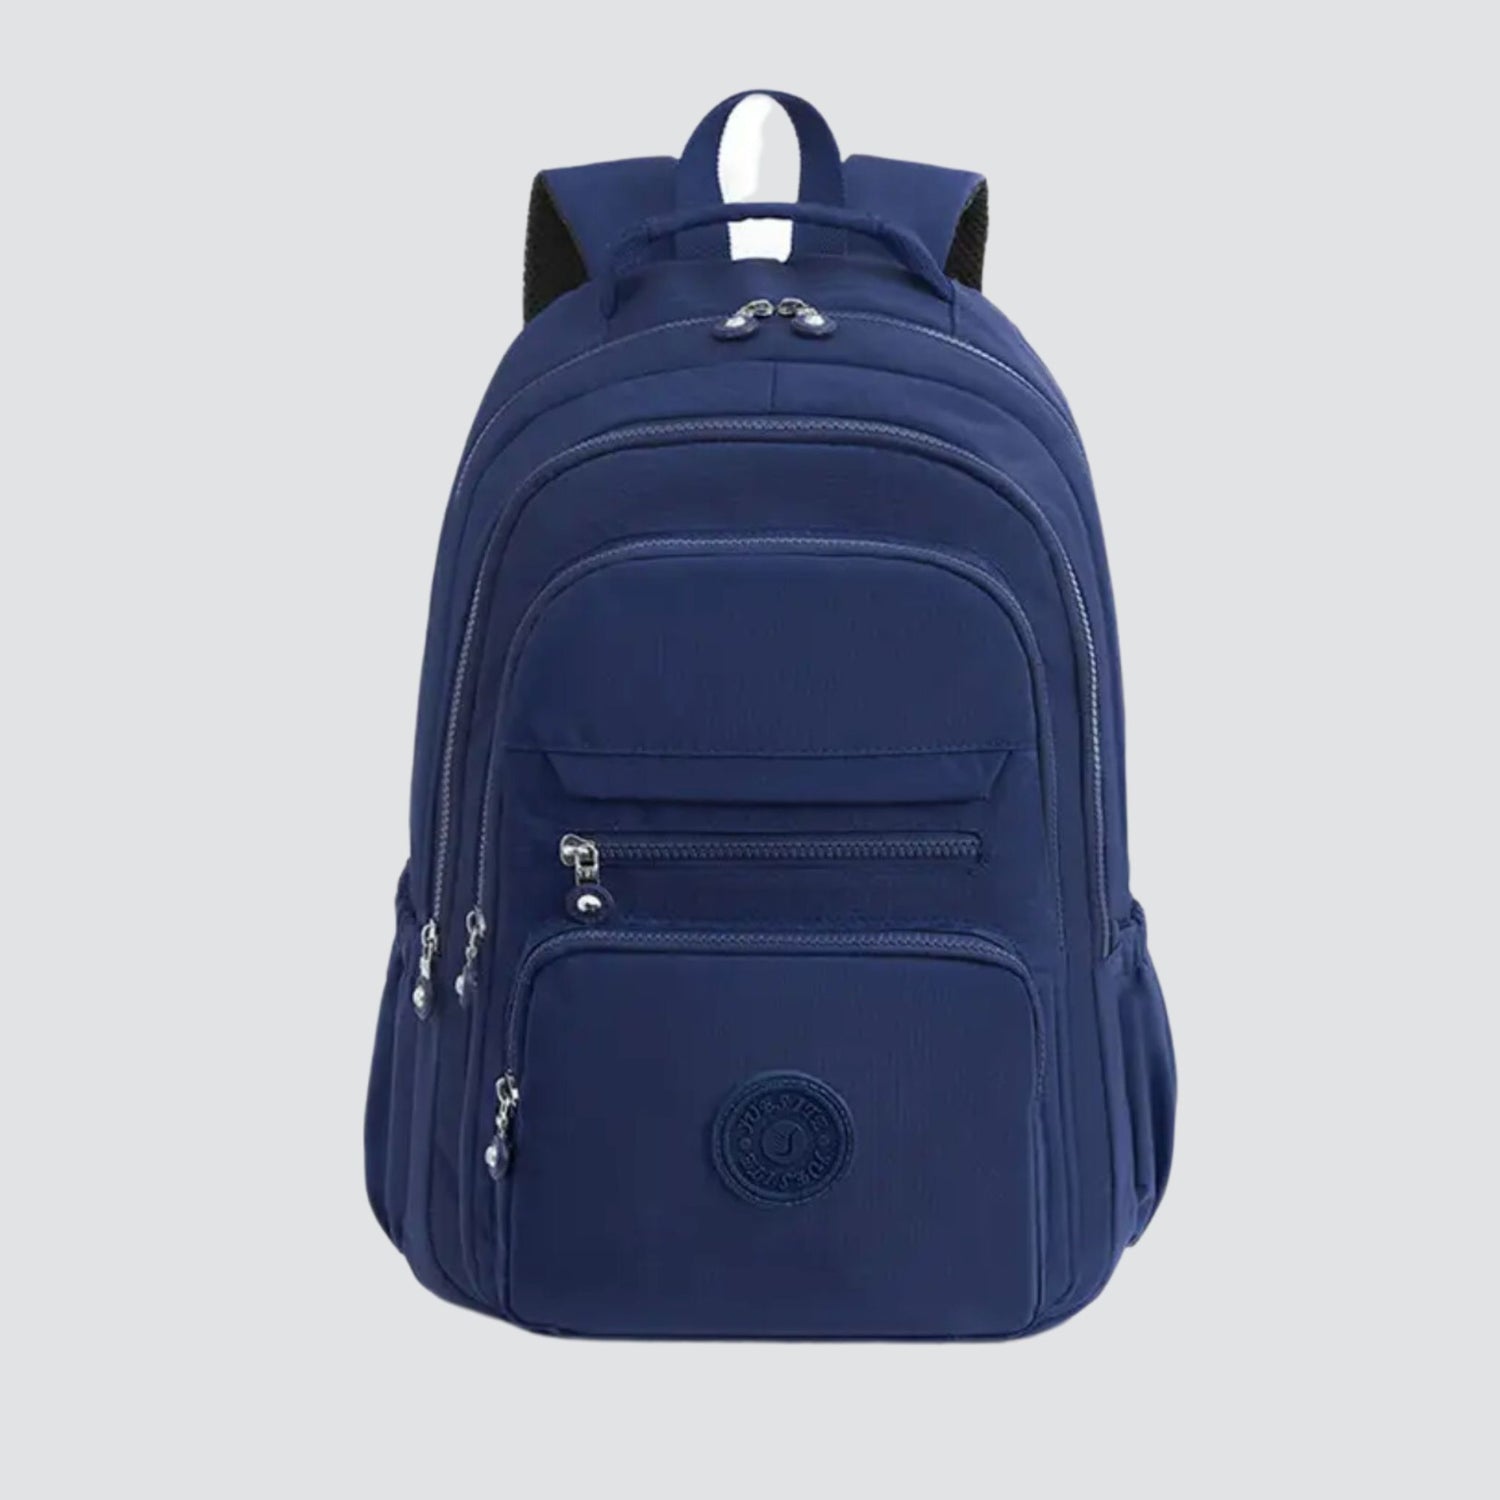 Navy Blue Sport Backpack